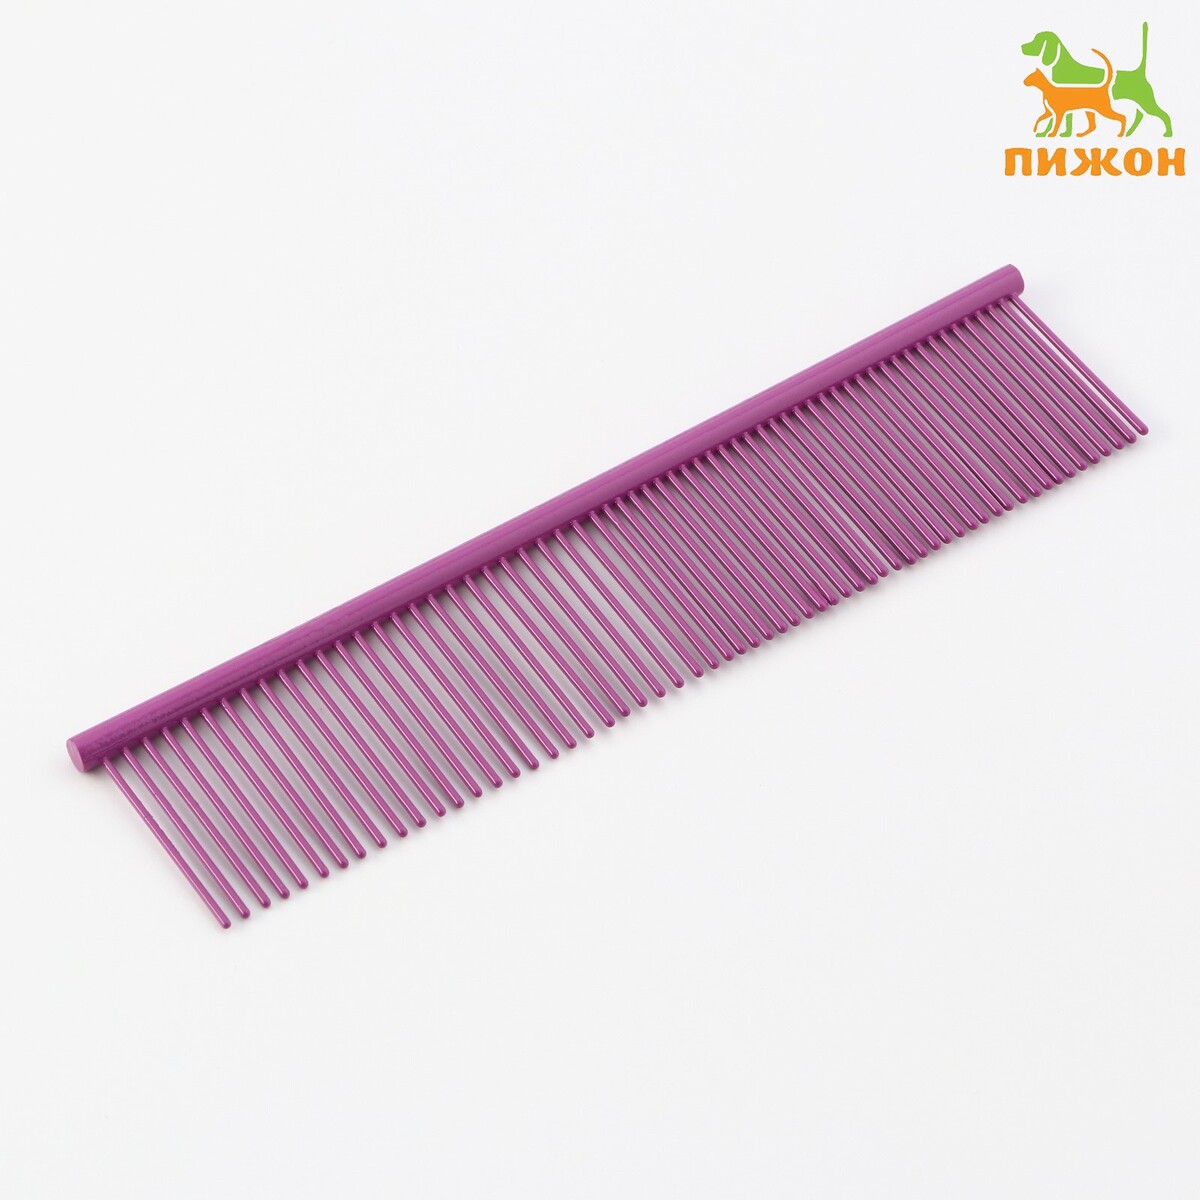 Расческа для шерсти с гальваническим покрытием, 18,8 х 4,2 см, фиолетовая расческа для шерсти